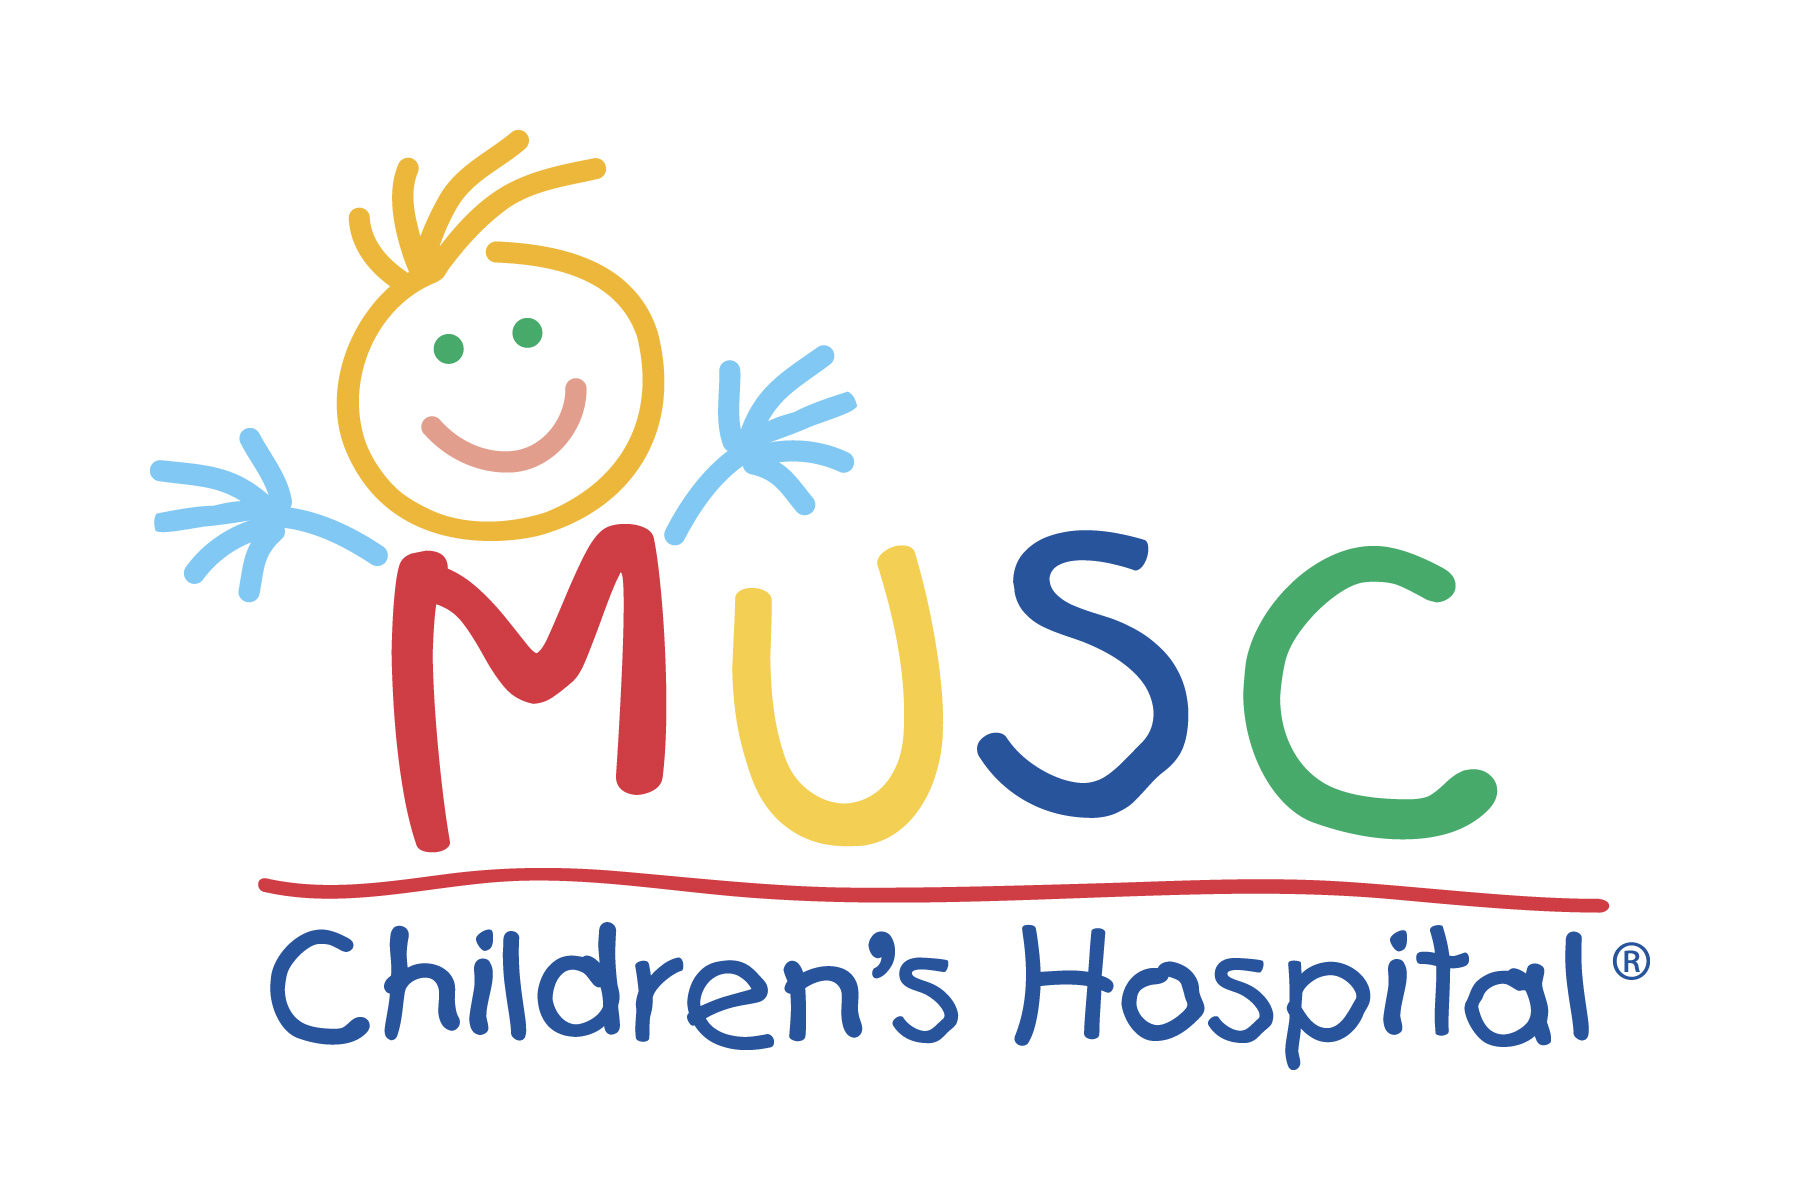 MUSC Children's Hospital